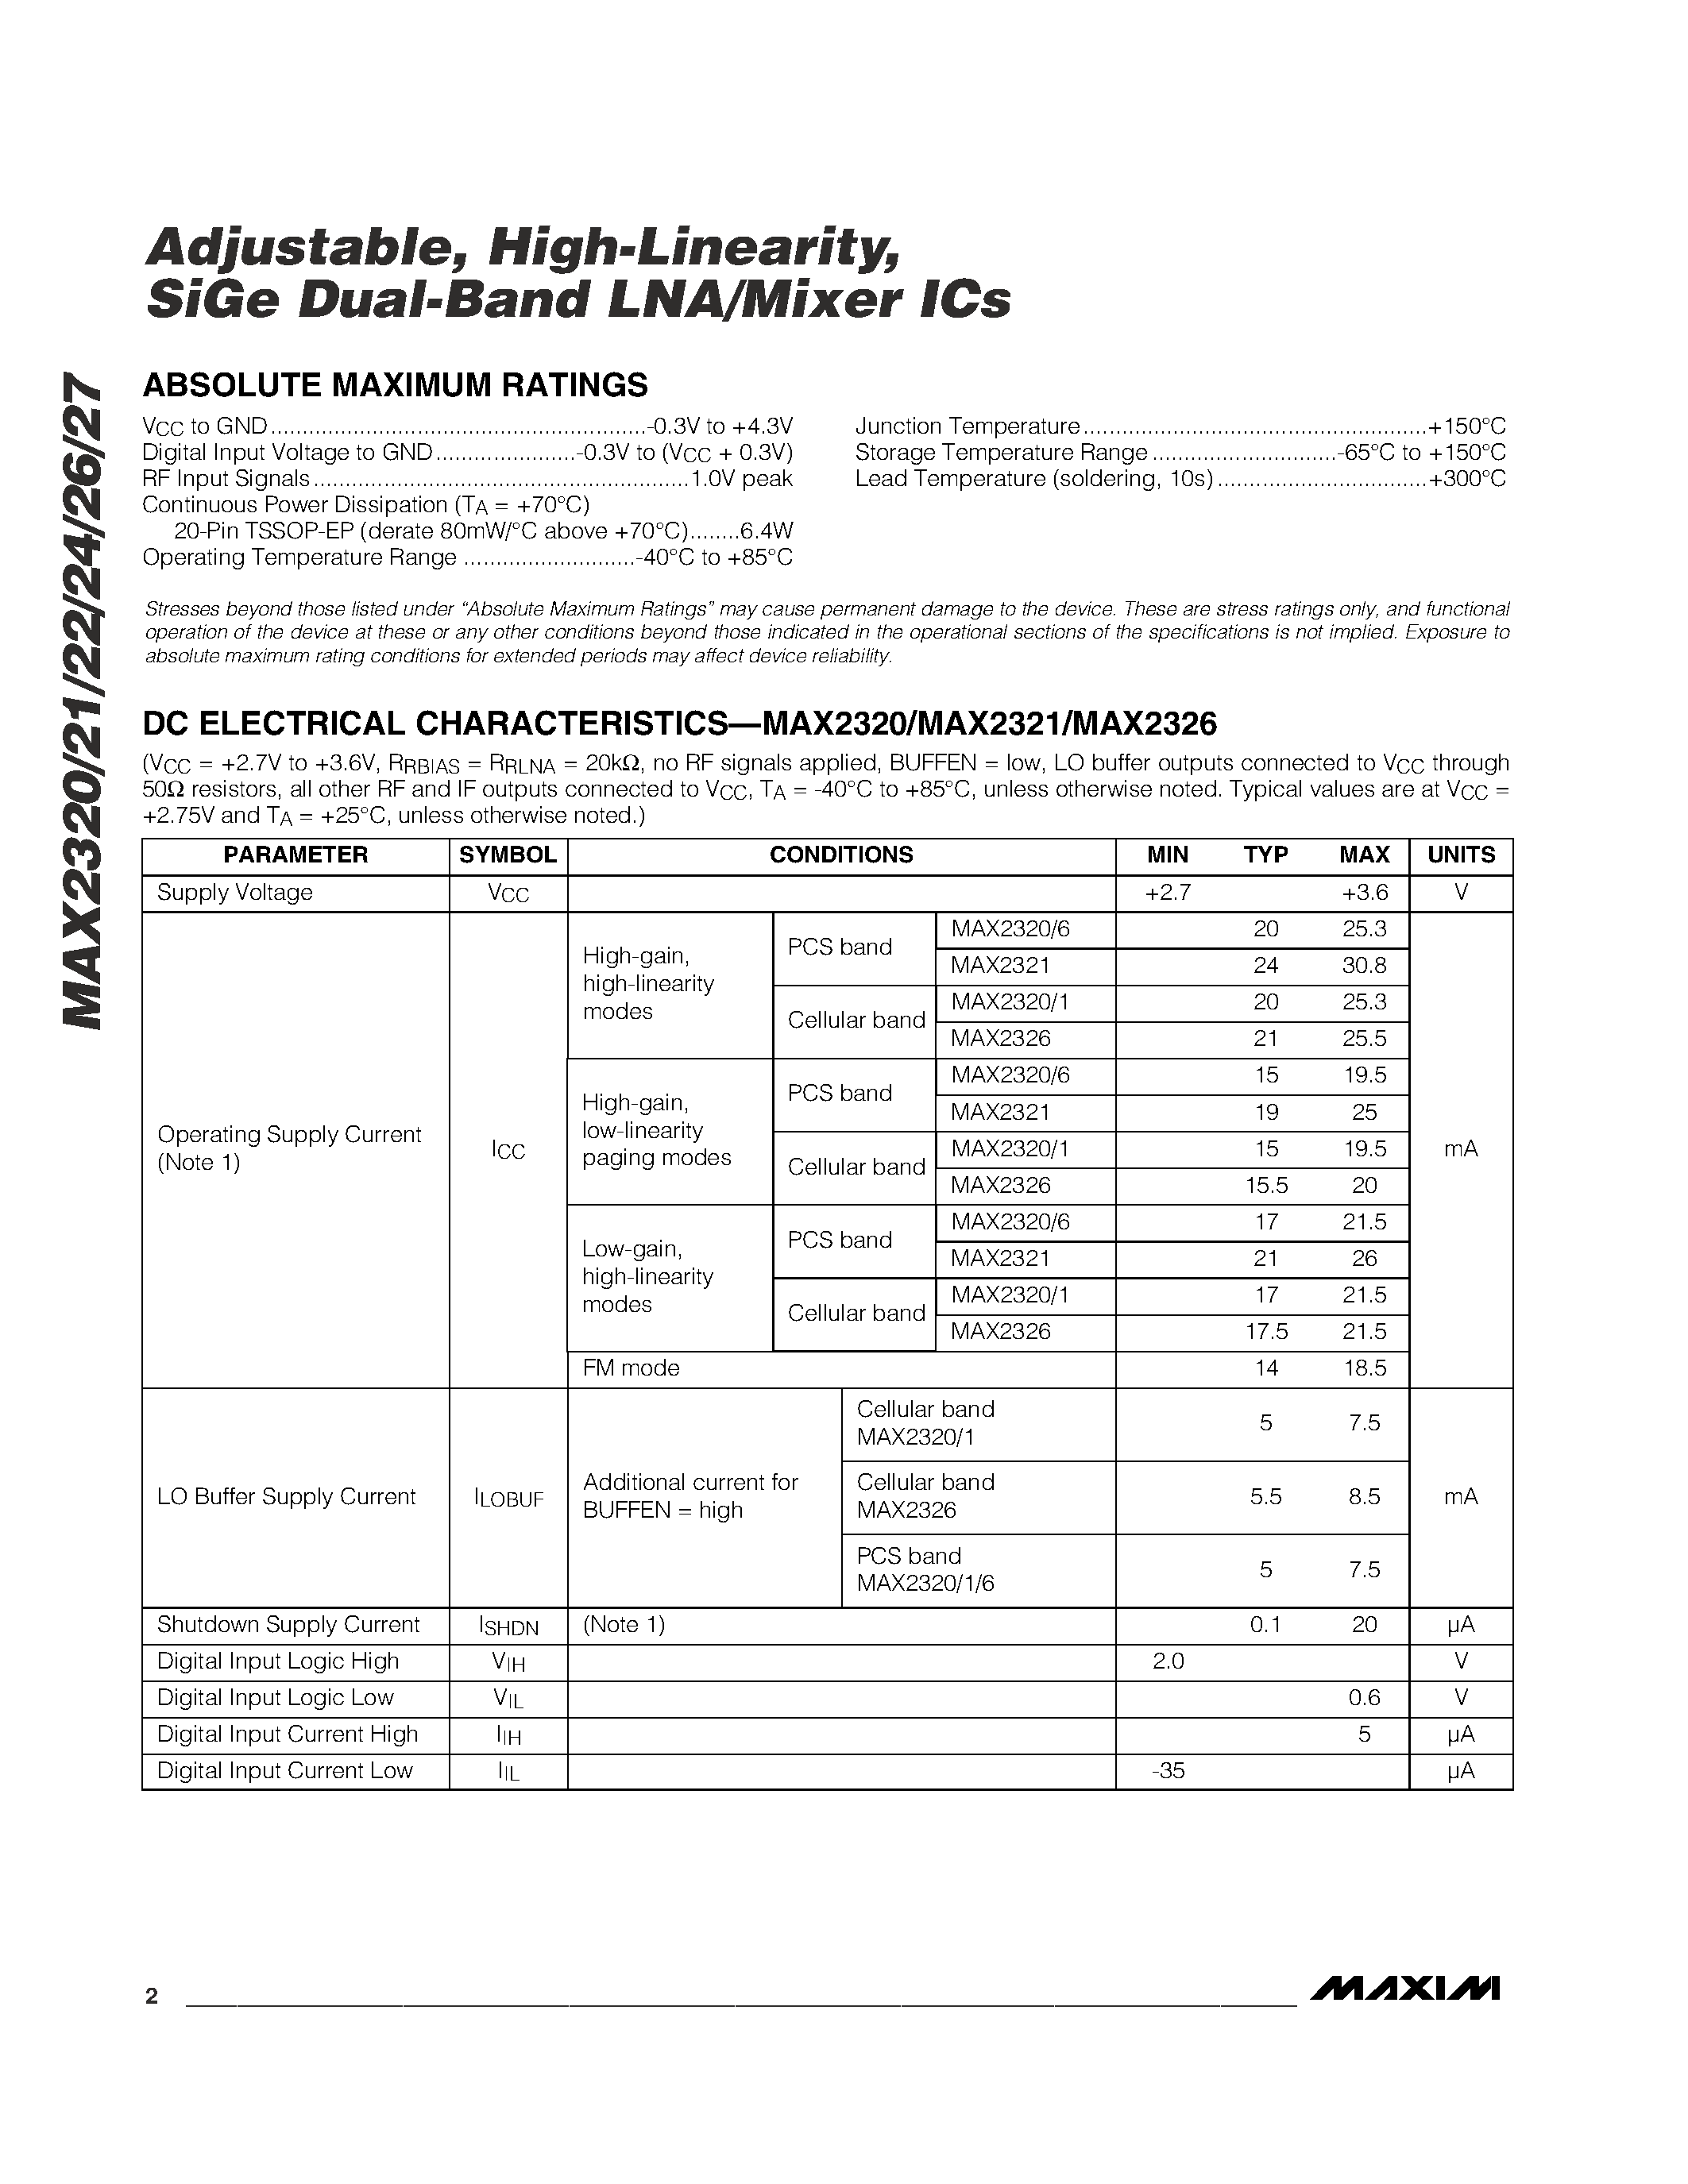 Даташит MAX2324 - Adjustable / High-Linearity / SiGe Dual-Band LNA/Mixer ICs страница 2